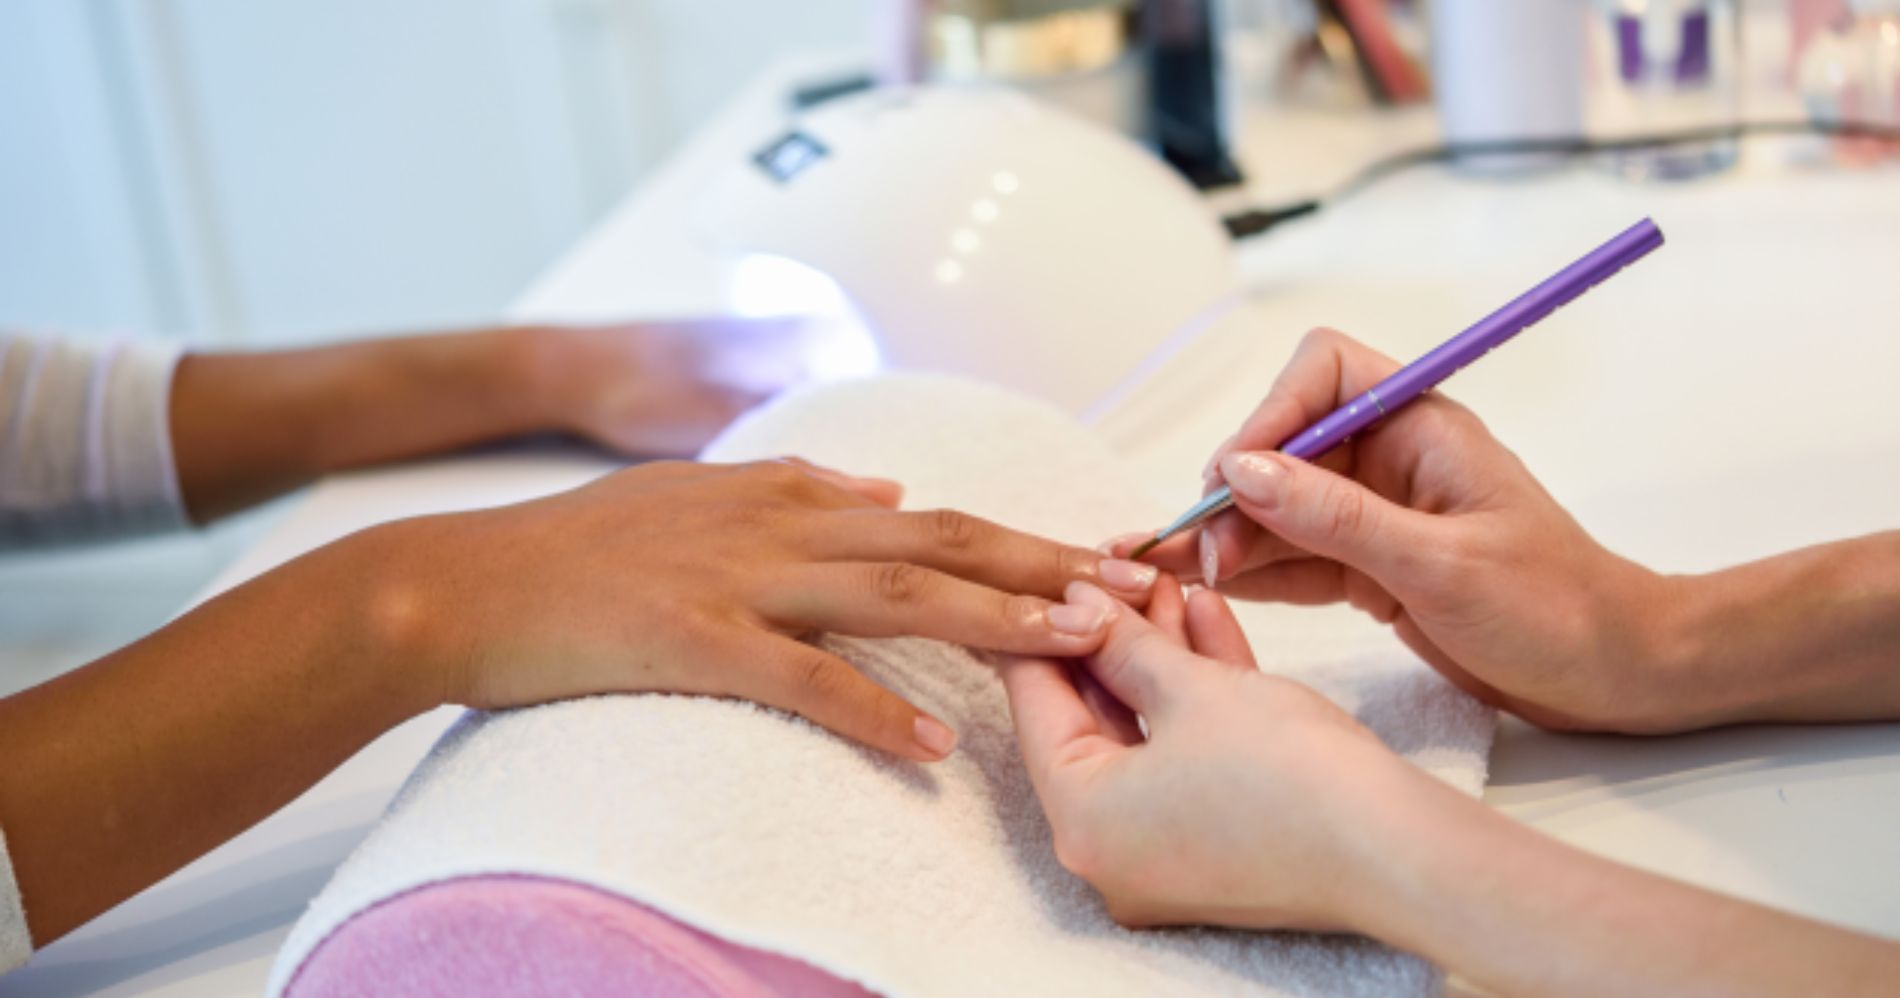 Inscrições abertas para curso de técnicas de serviços de manicure nesta quinta-feira (13)